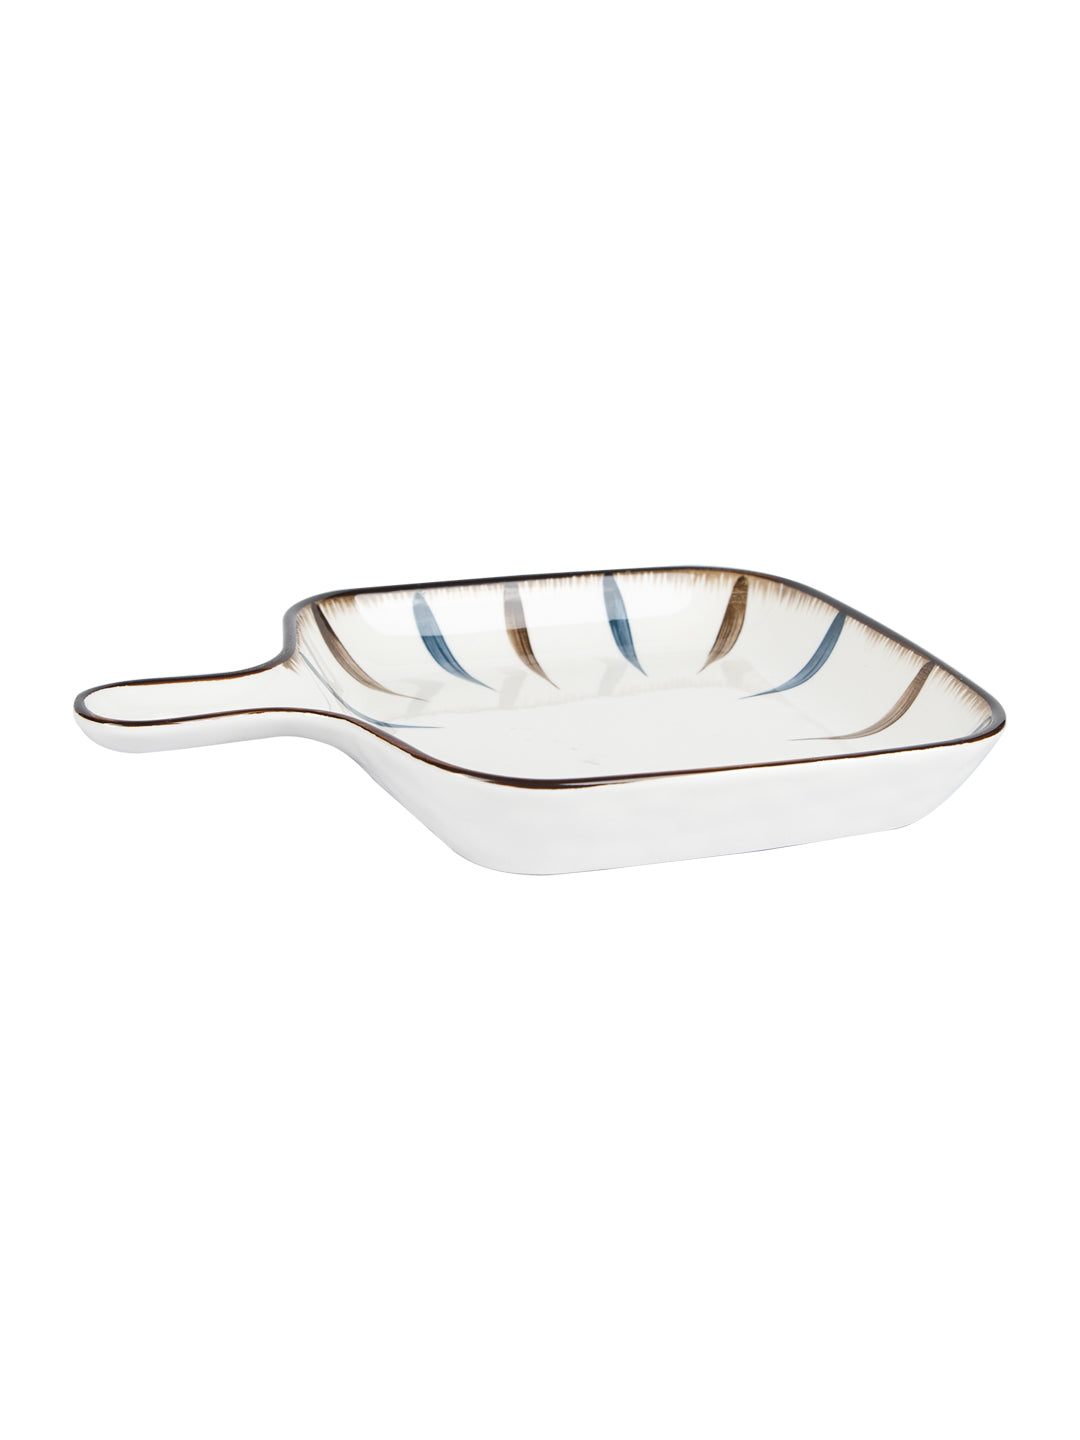 VON CASA Round Ceramic Serveware Dish Plates - Off White